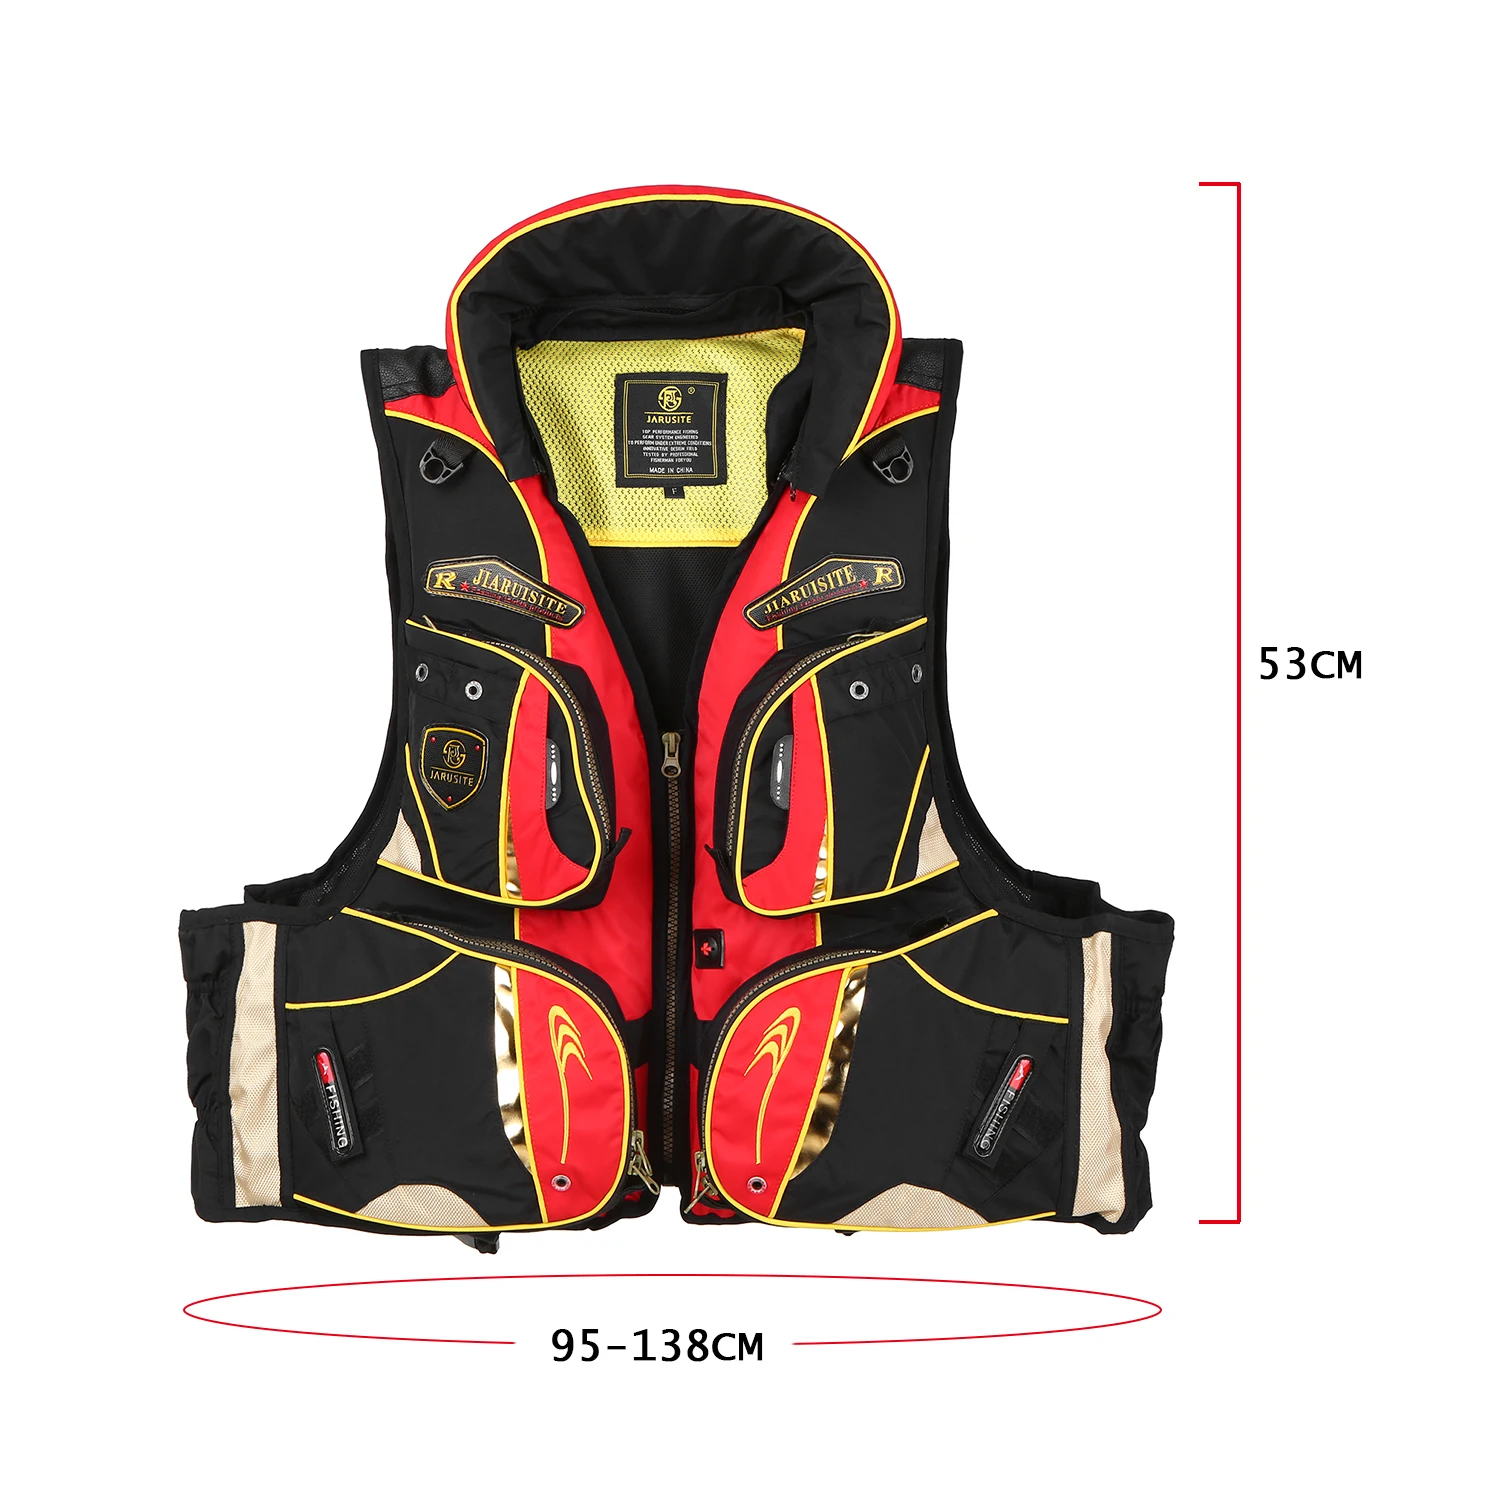 

Fishing Life Jacket with Multiple Pockets Floatation Vest Adults Buoyancy Waistcoat For Swimming Boating Ski Drifting